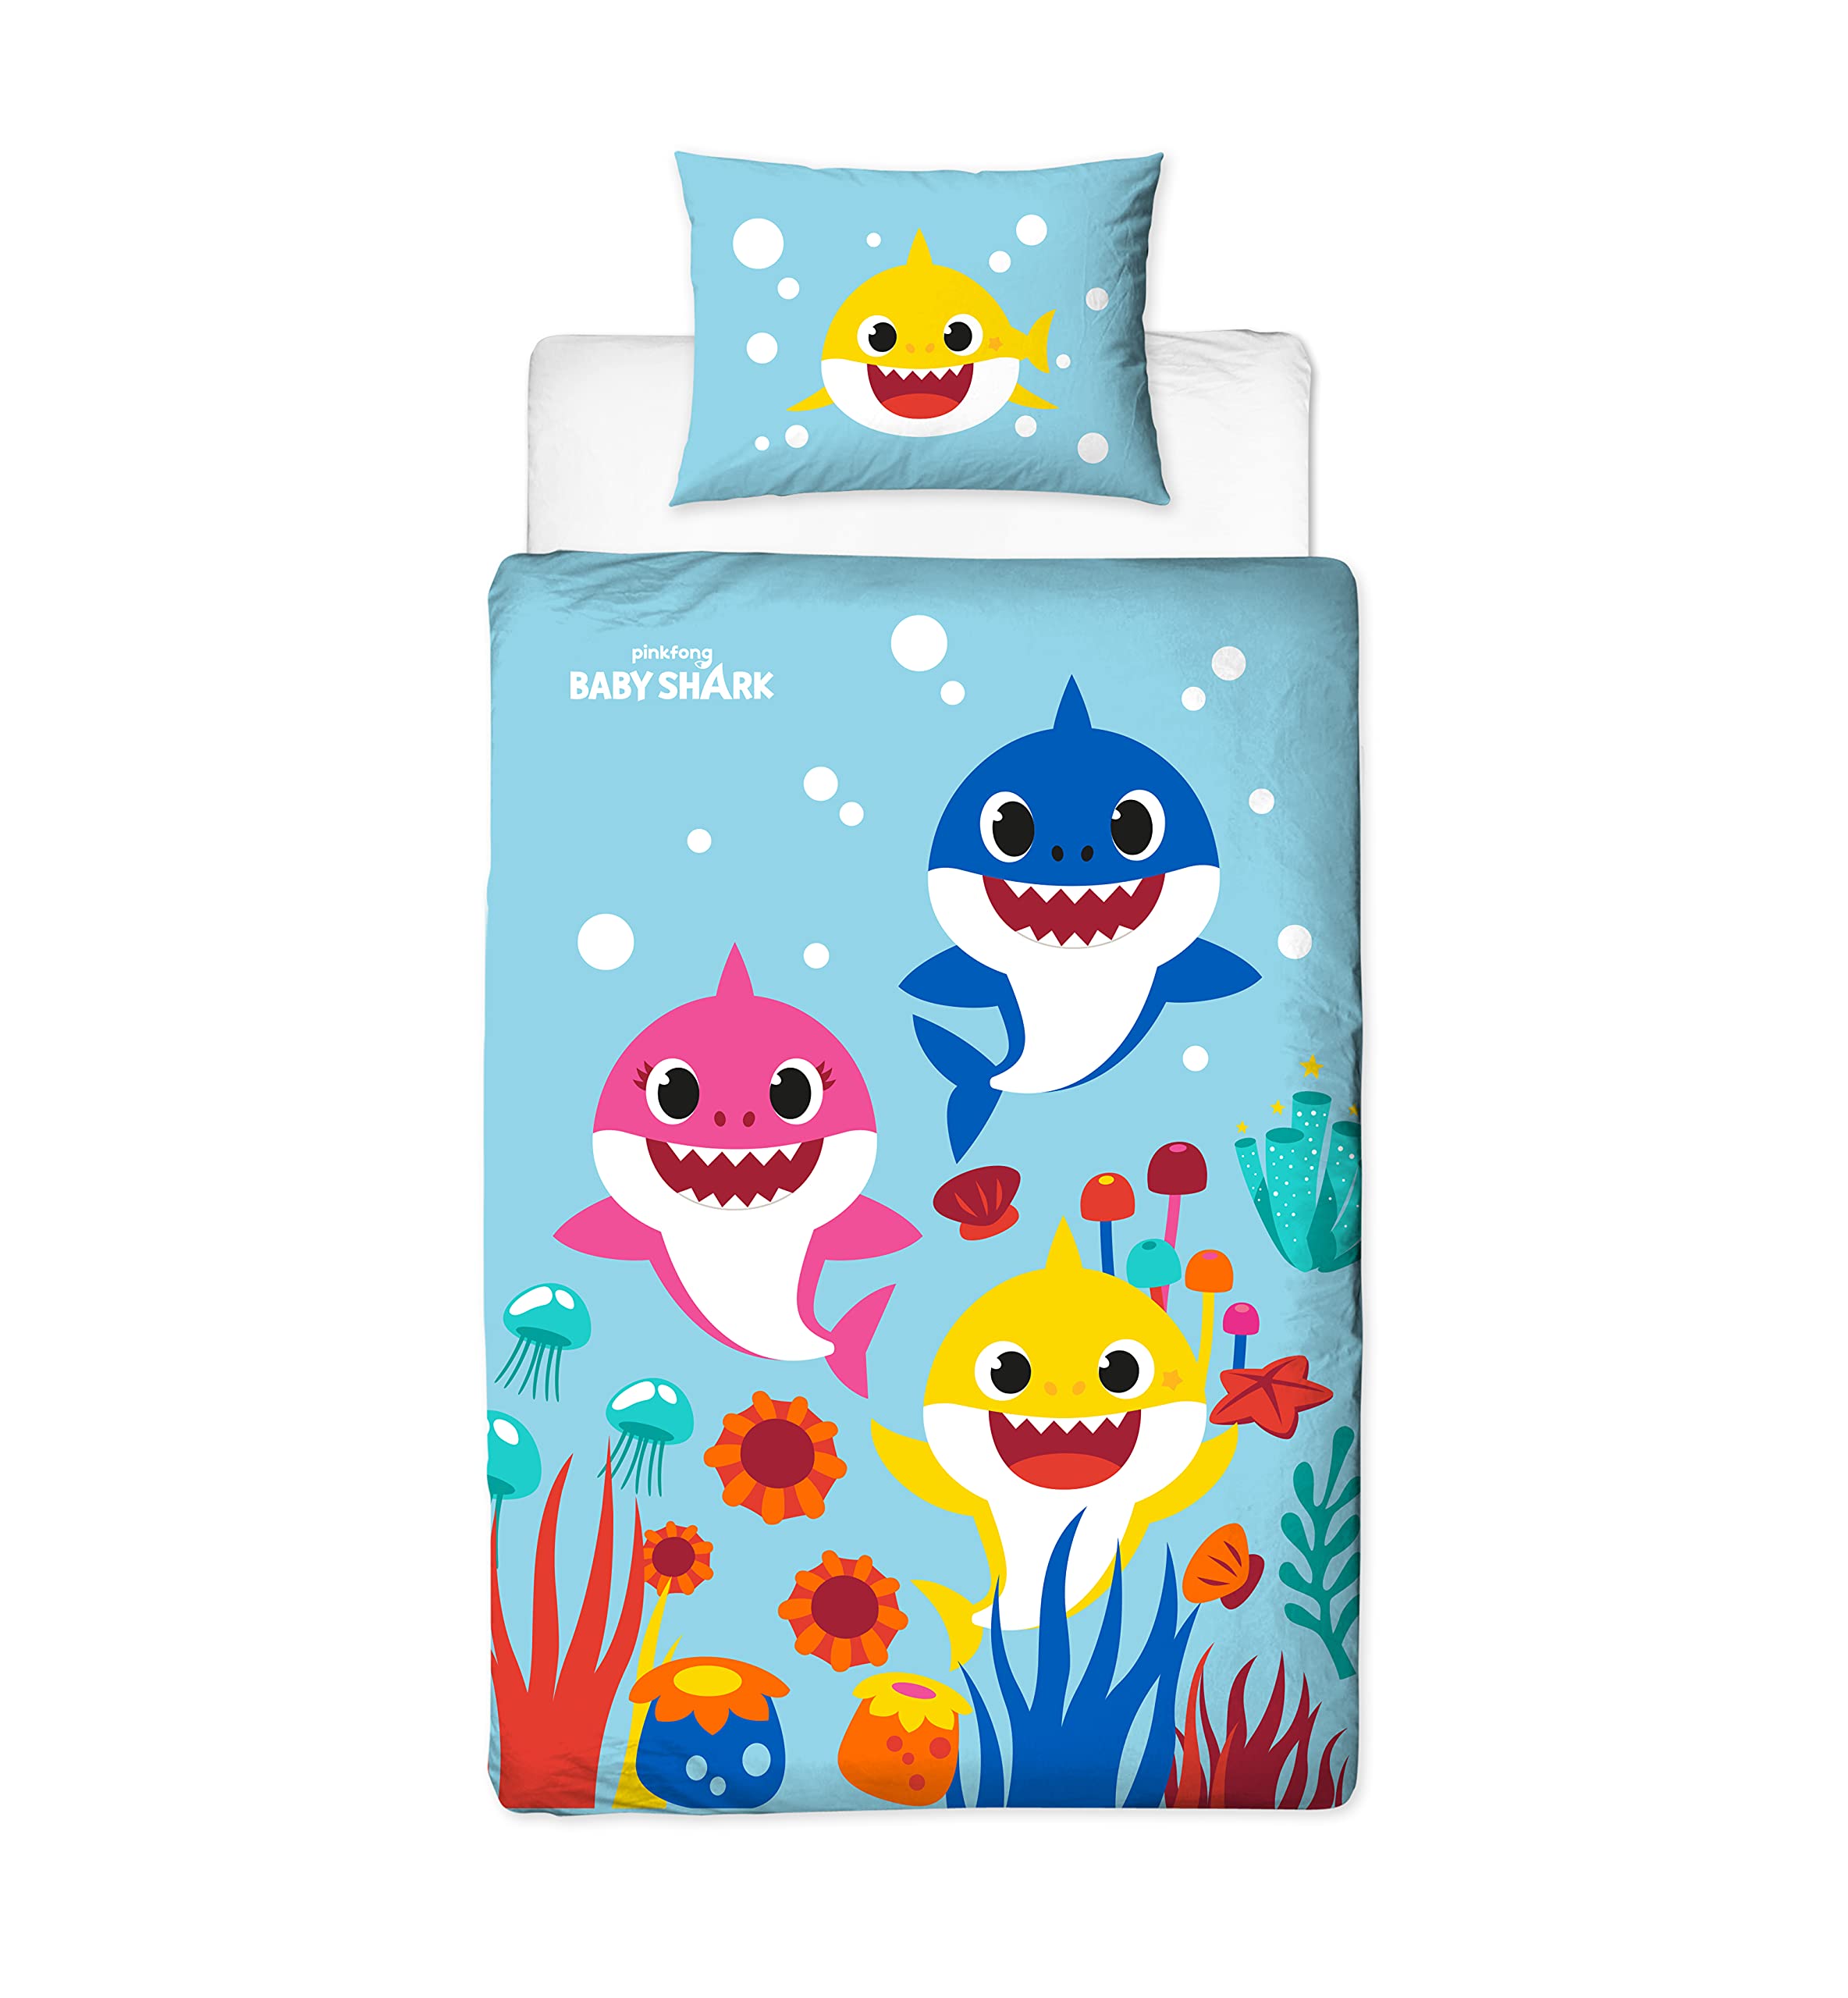 Baby Shark Bettbezug für Einzelbett, offizielles Lizenzprodukt, wendbar, 2-seitiges Regenbogen-Design mit passendem Kissenbezug, Polycotton